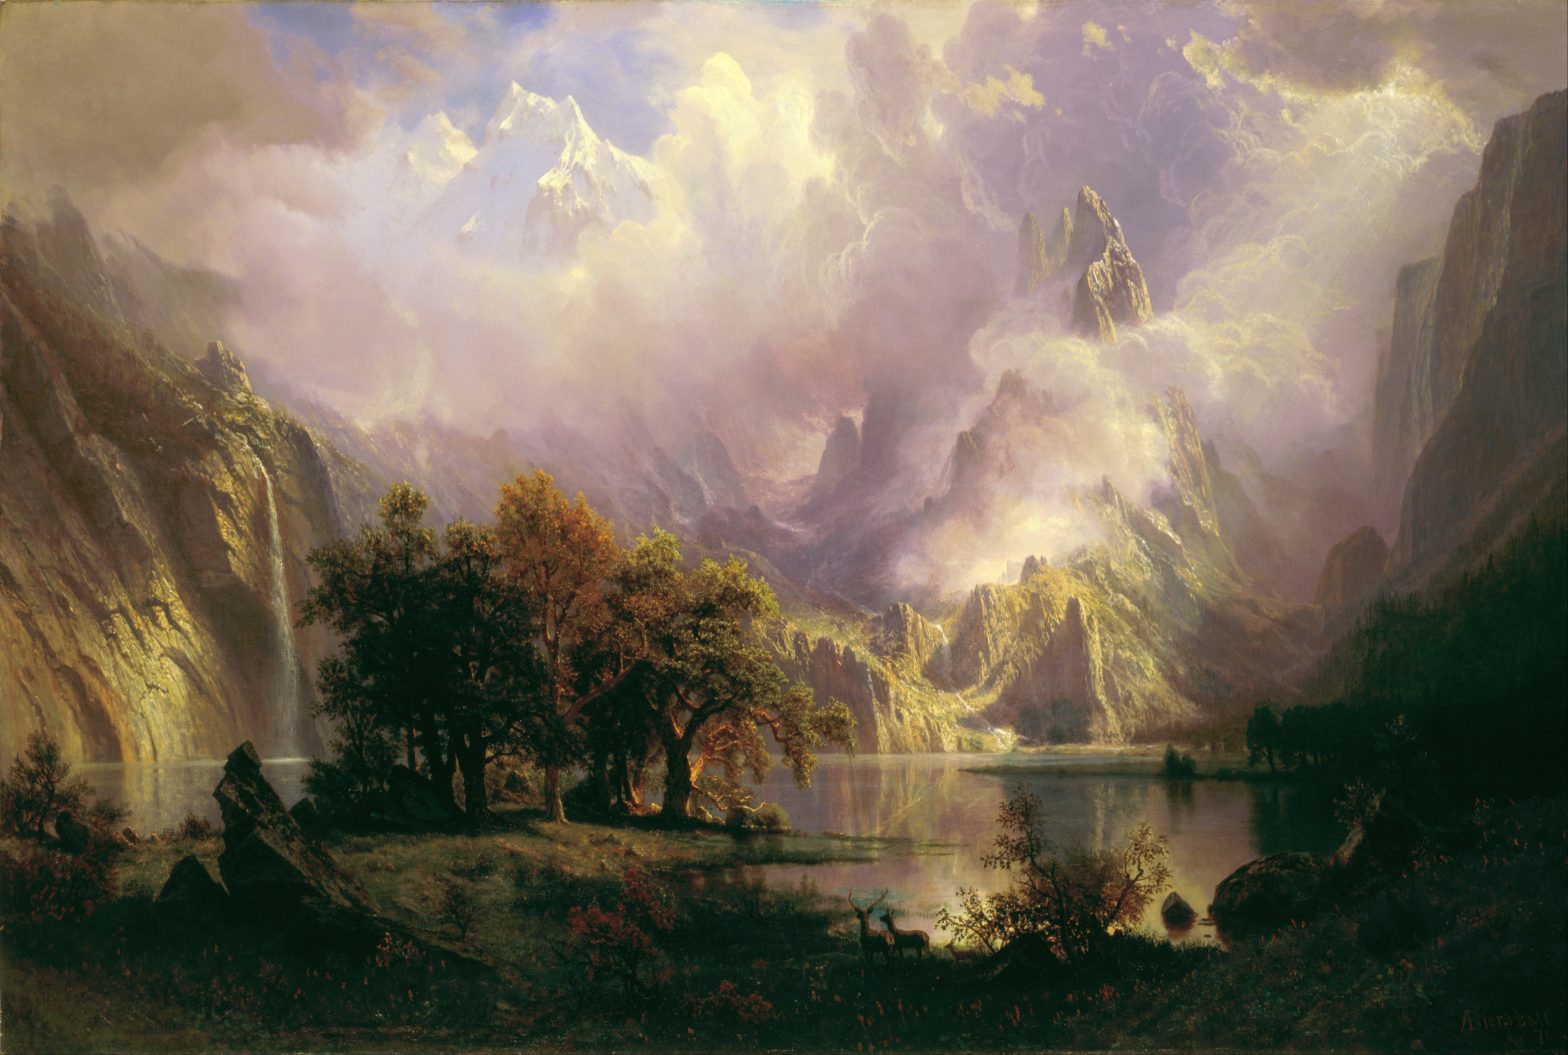 Biography: Albert Bierstadt